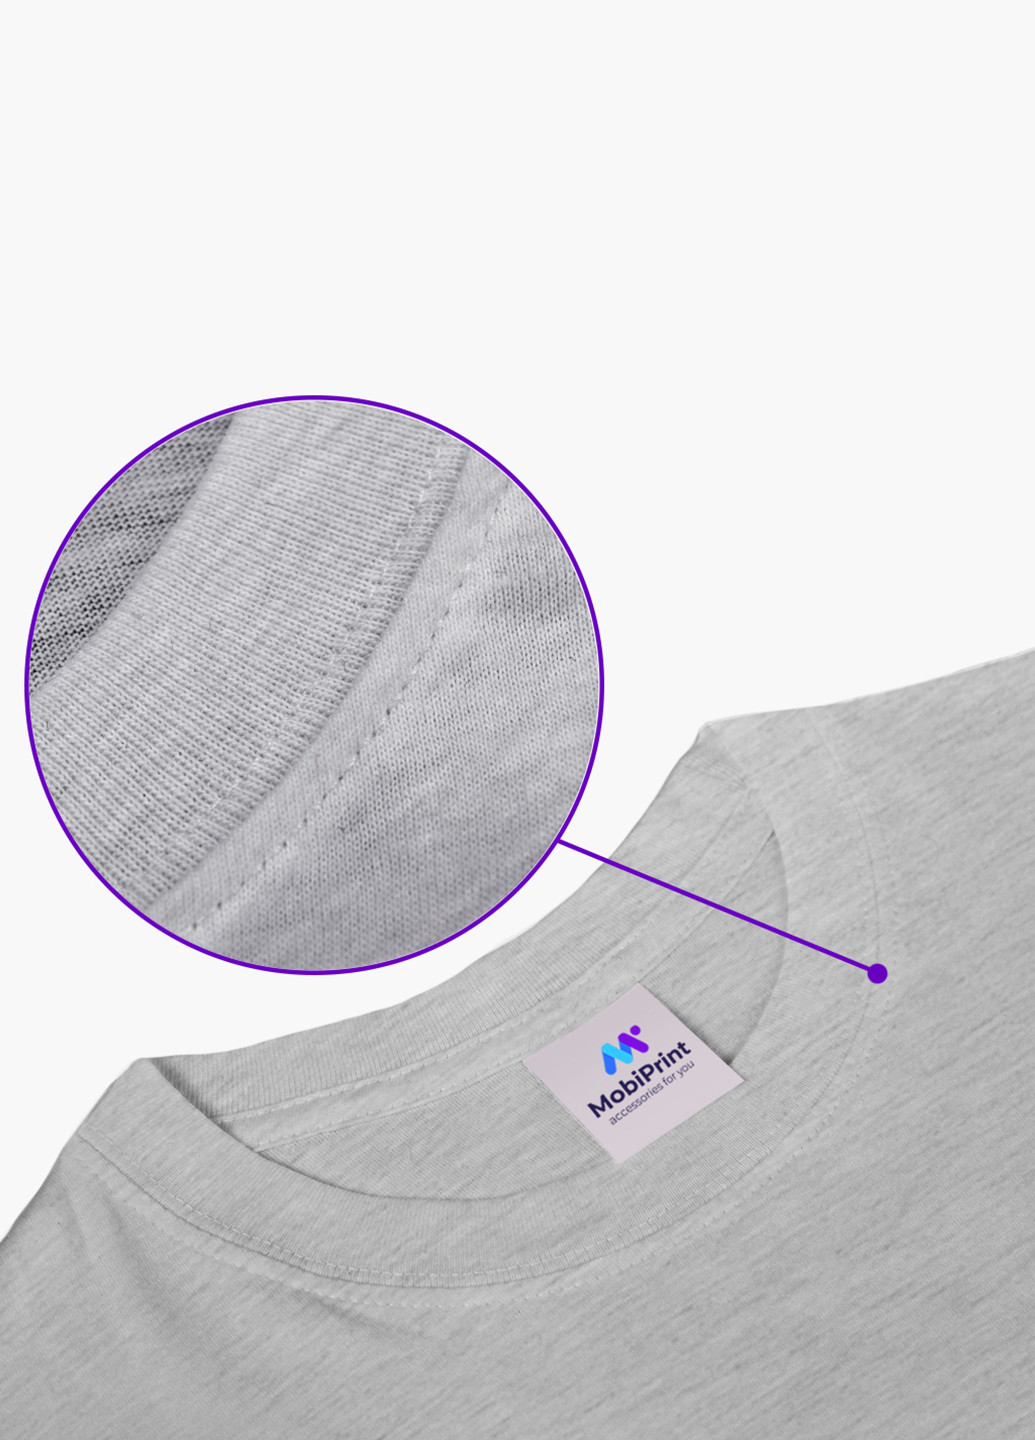 Світло-сіра демісезонна футболка дитяча лайк (likee) (9224-1041) MobiPrint